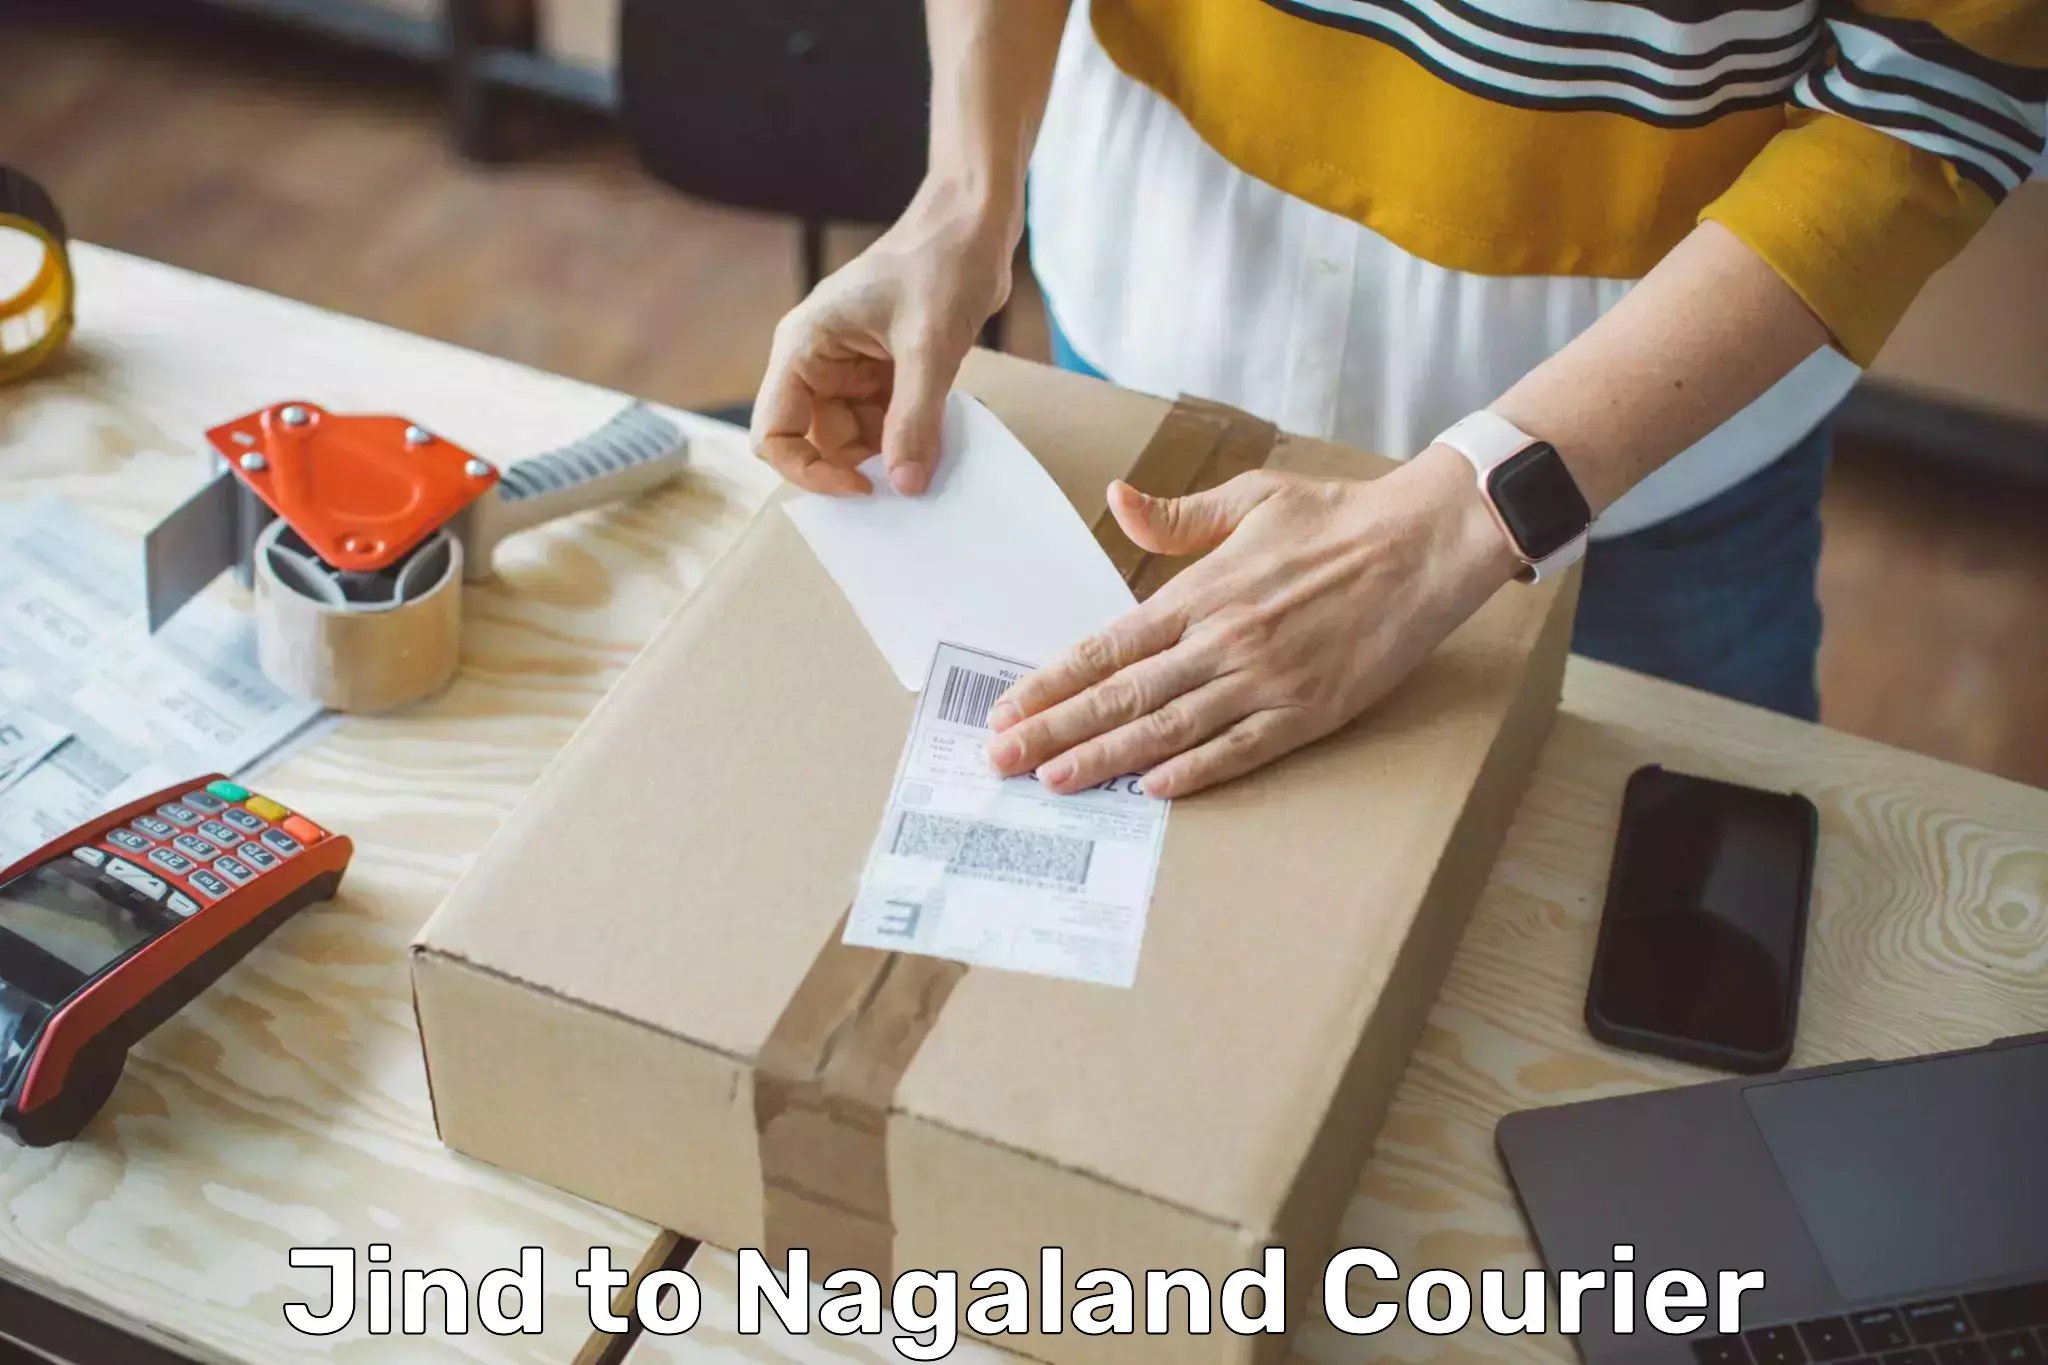 Logistics management in Jind to Nagaland